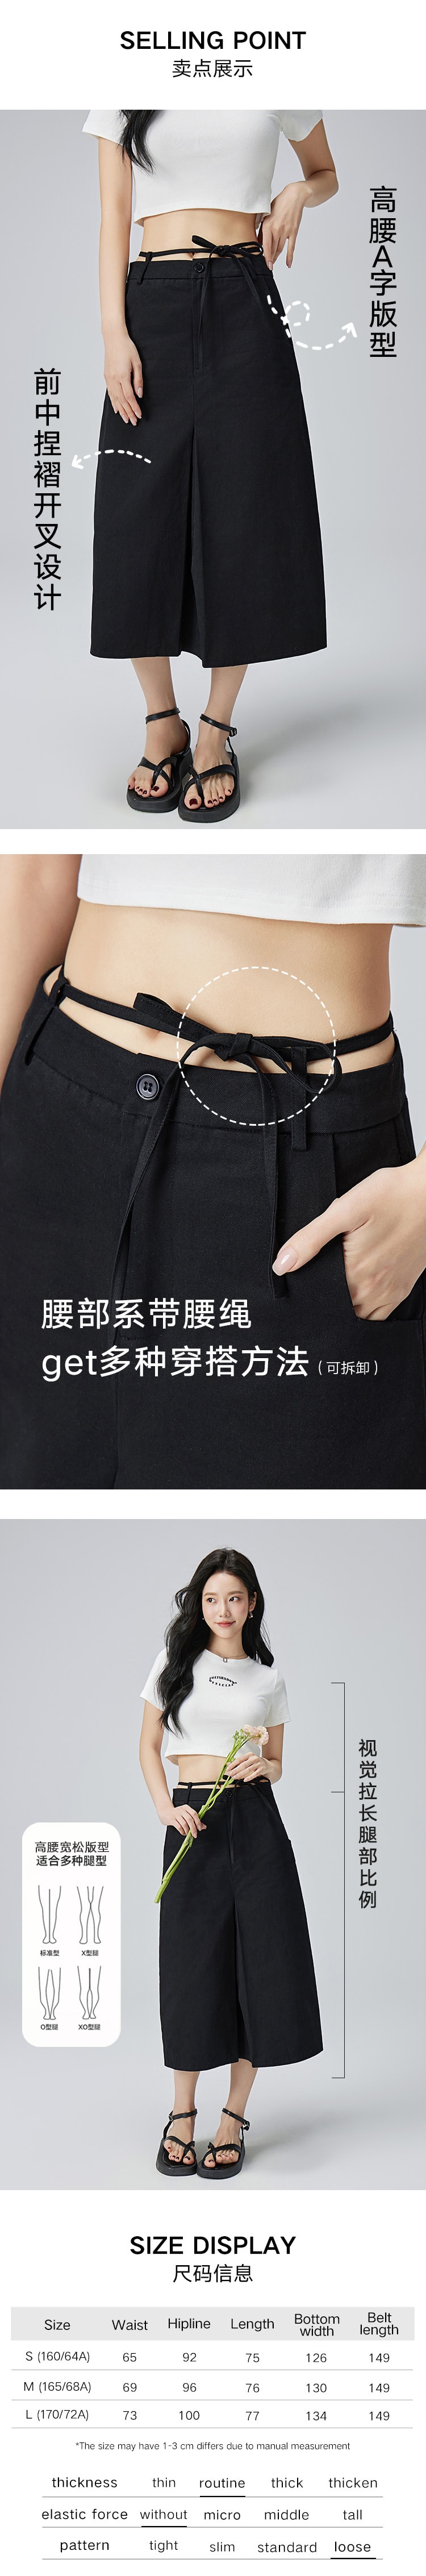 【中国直邮】HSPM 新款高腰A字系带开叉半身裙 黑色 S